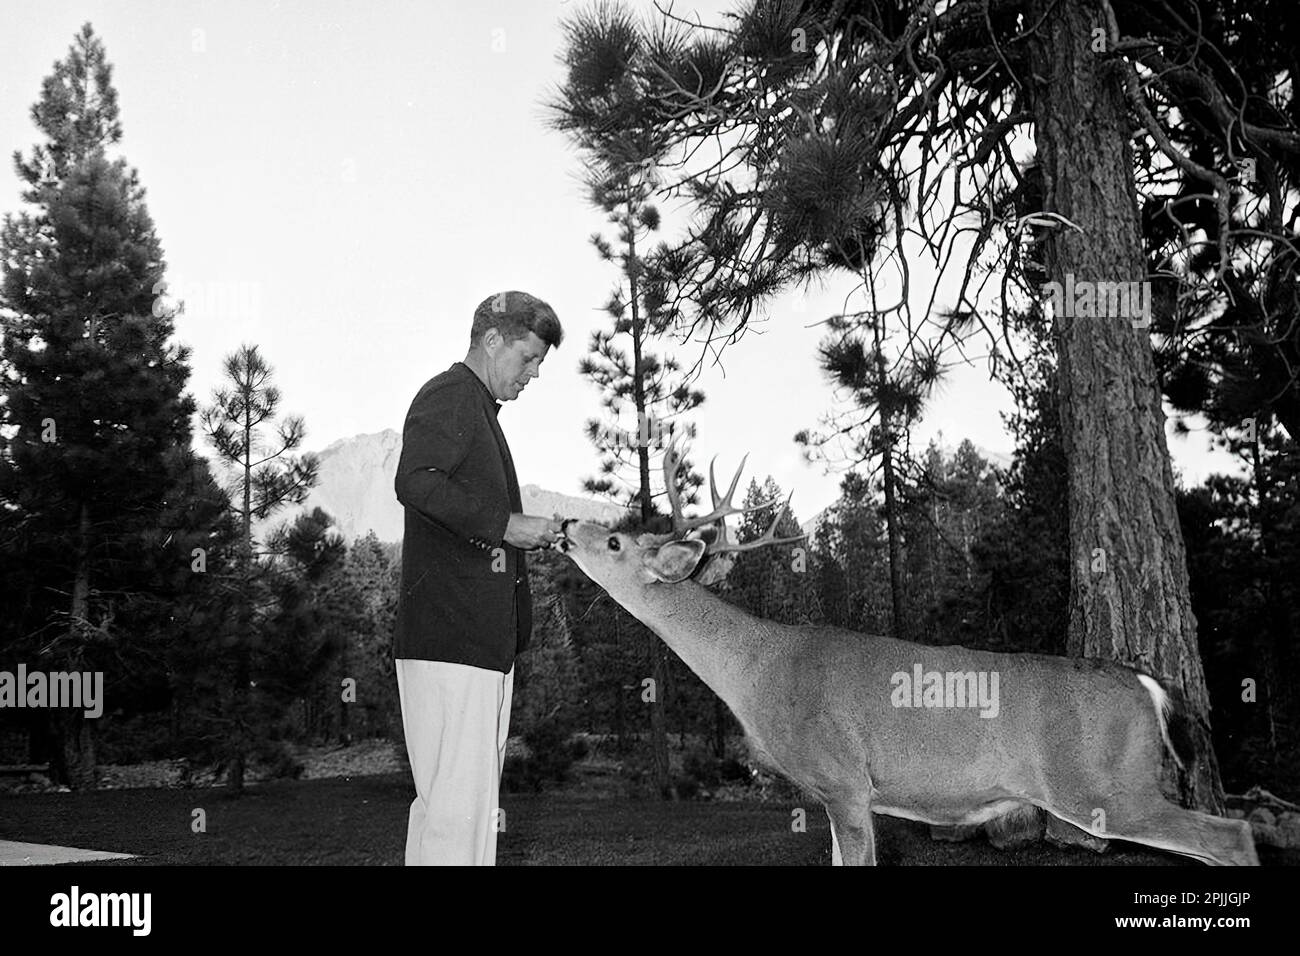 ST-441A-4-63 27 de septiembre de 1963 Tour de Conservación de los Estados Occidentales: California, Parque Nacional Volcánico Lassen: El Presidente Kennedy alimenta a los ciervos Por favor, crédito 'Cecil Stoughton. Fotografías de la Casa Blanca. Biblioteca y Museo Presidencial John F. Kennedy, Boston Foto de stock